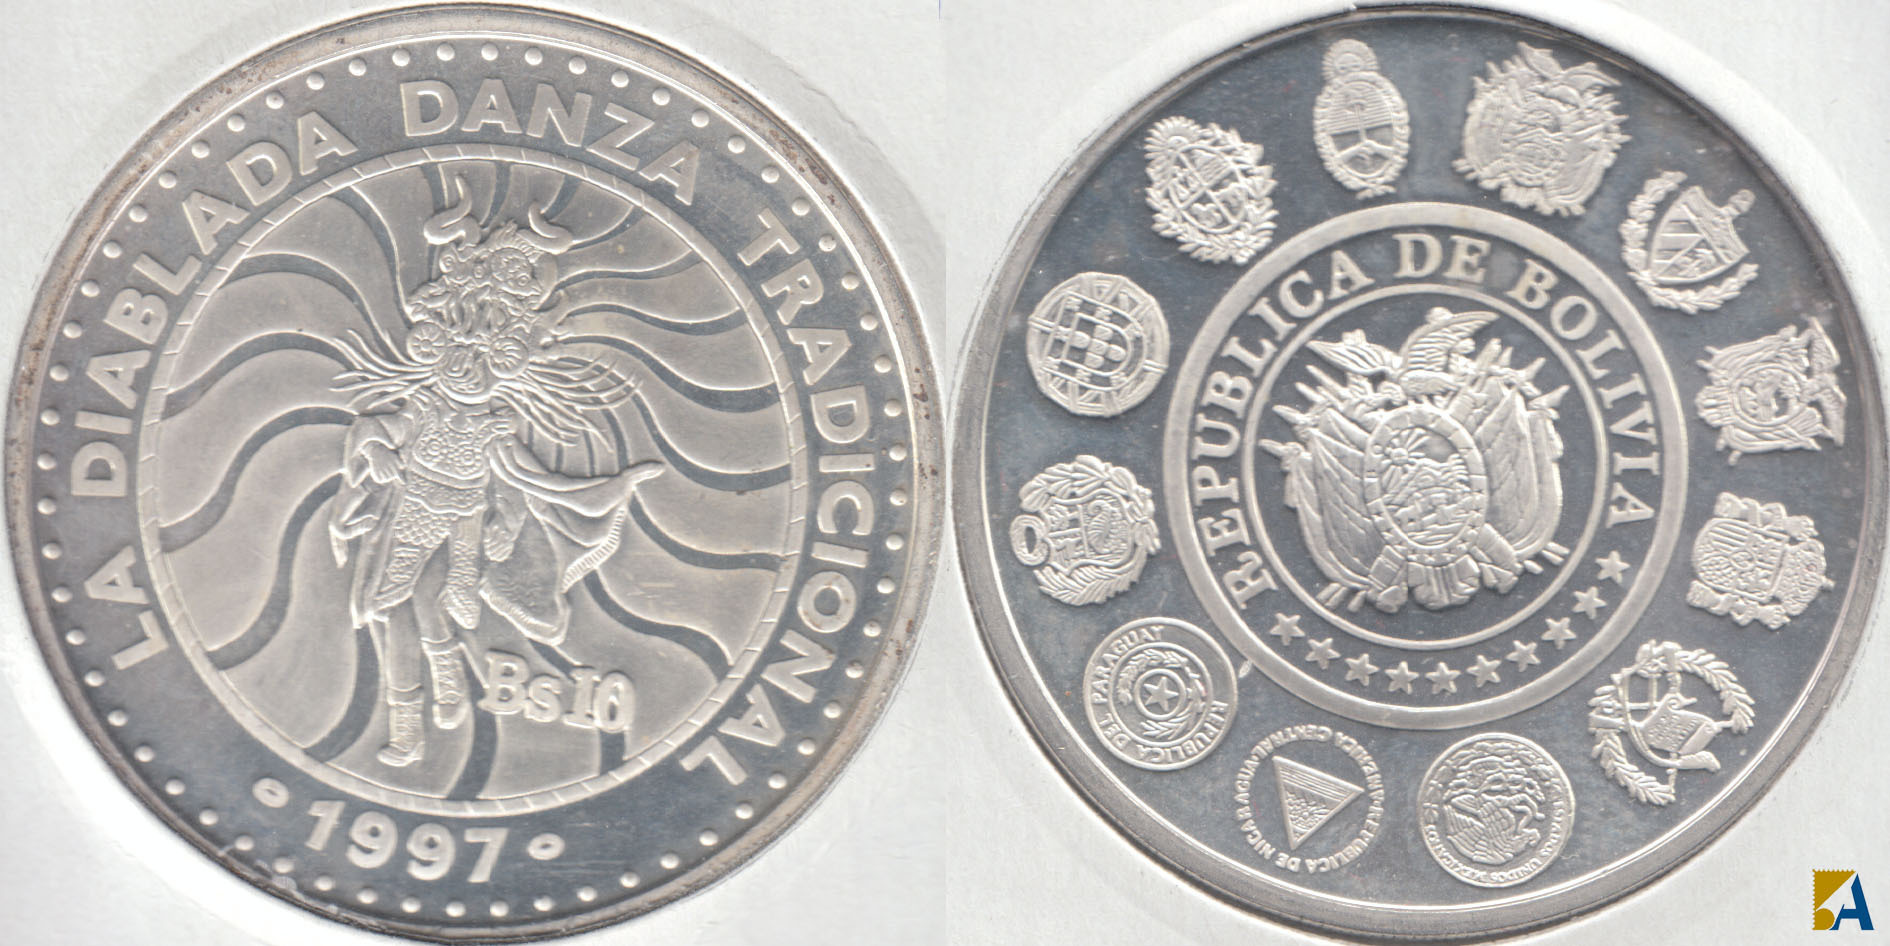 BOLIVIA. 10 BOLIVIANOS DE 1997 PROOF. PLATA 0.925.